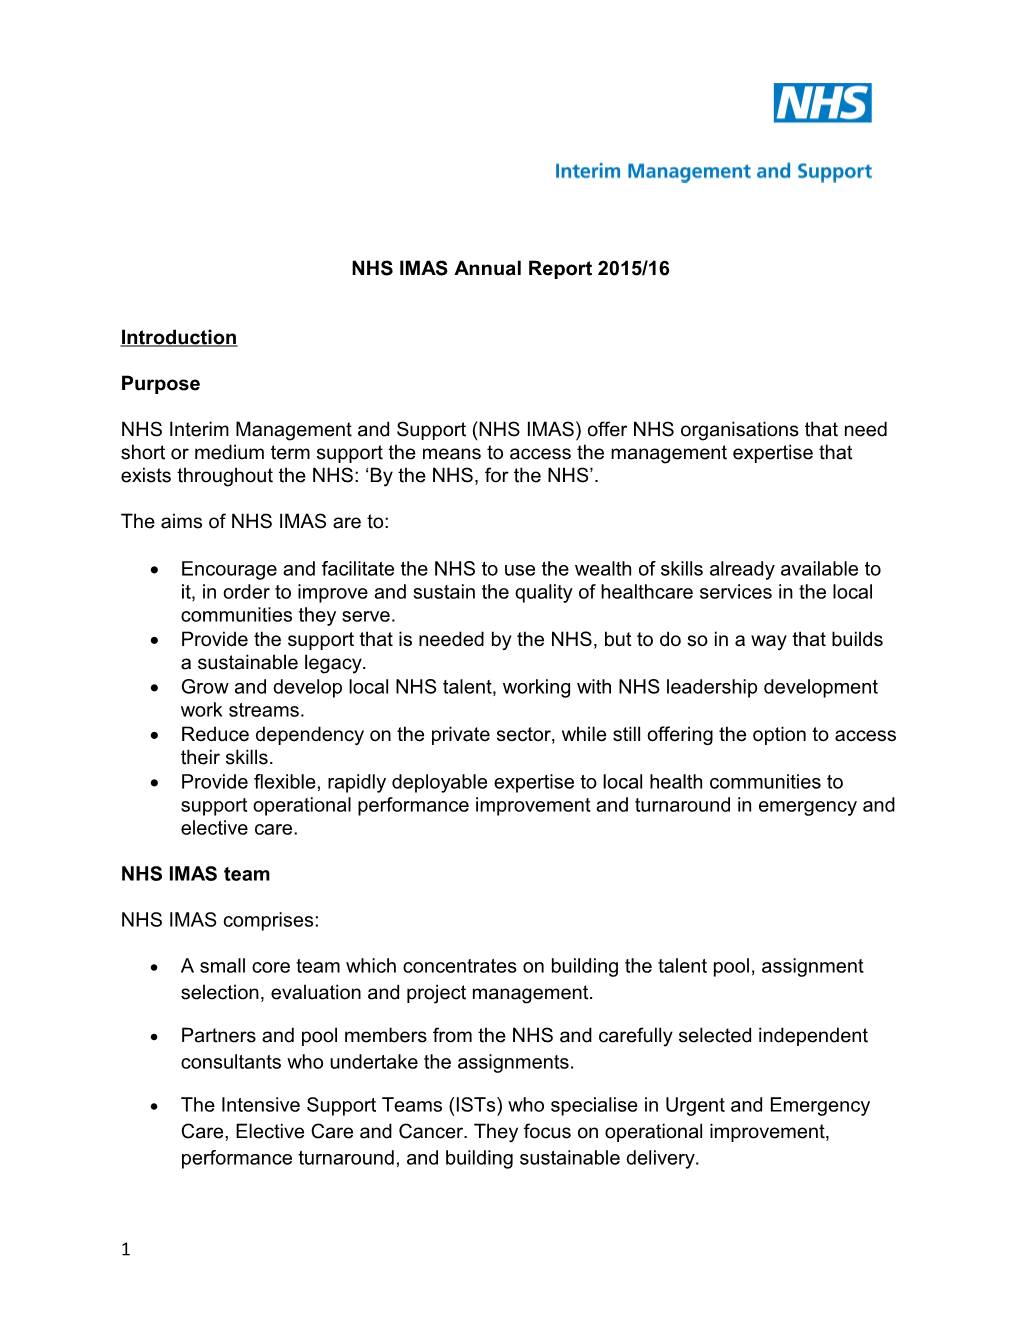 NHS IMAS Annual Report 2012/13